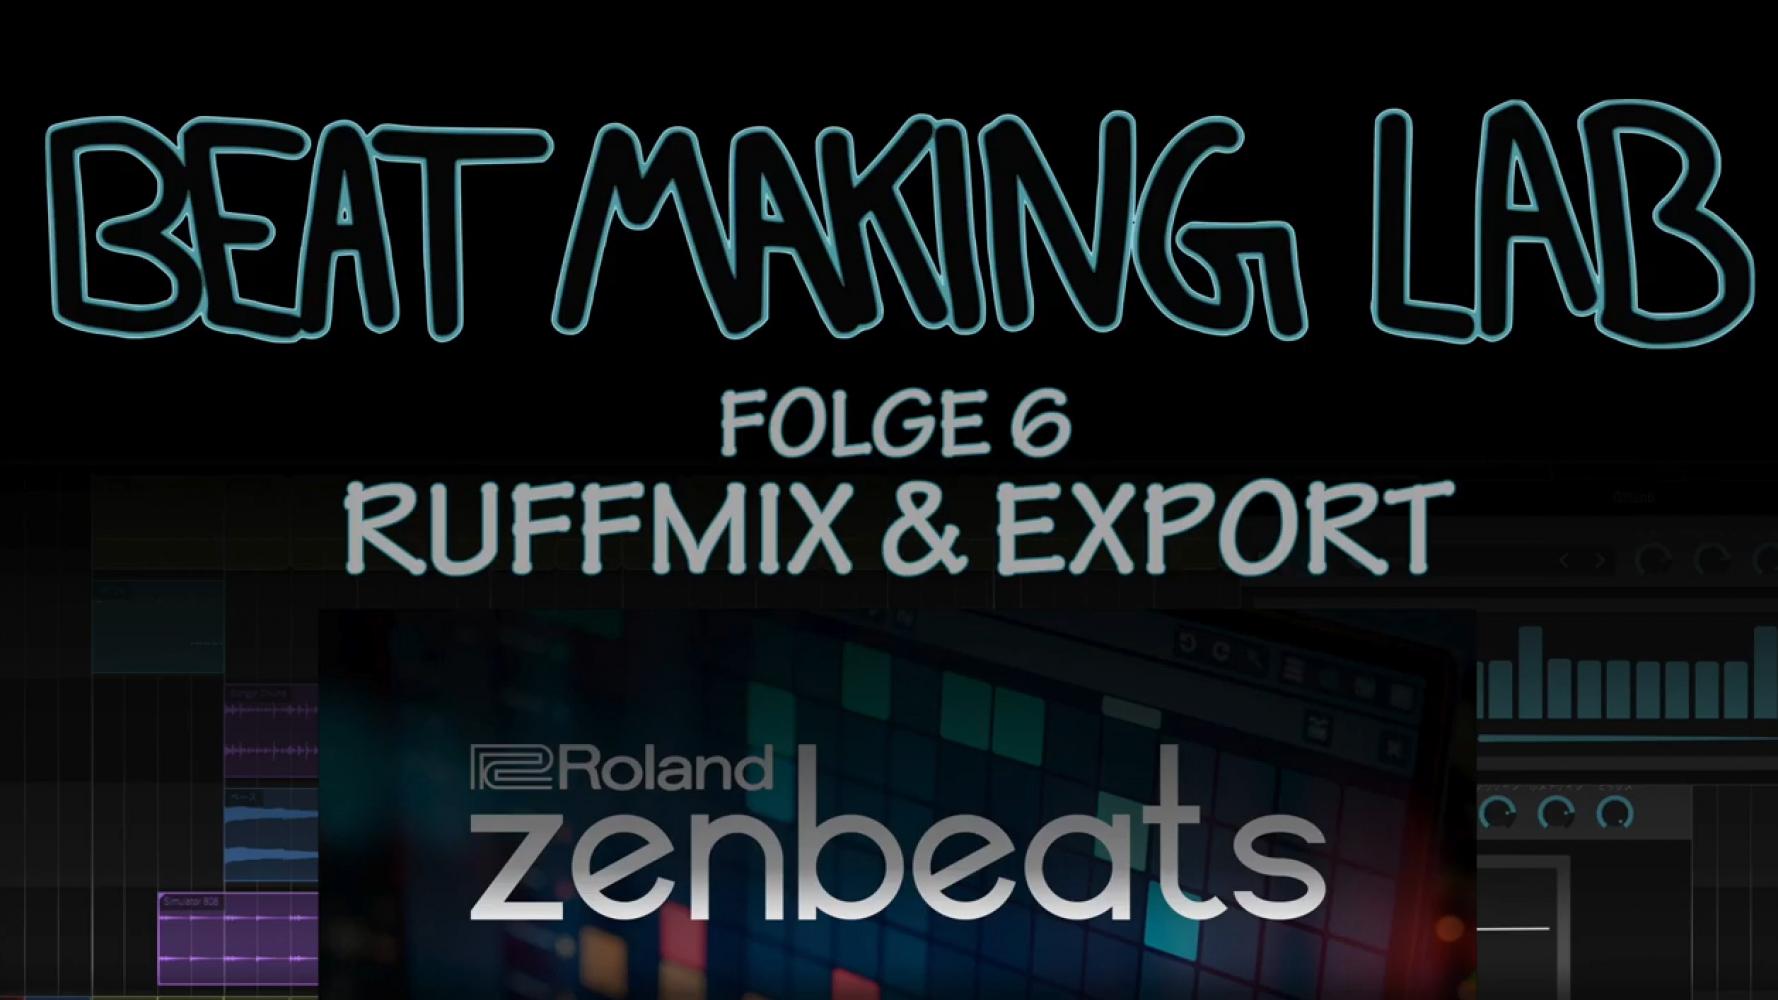 Bild zur Veranstaltung - edYo!cation 2020 - Beat Making Lab, Ruffmix & Export